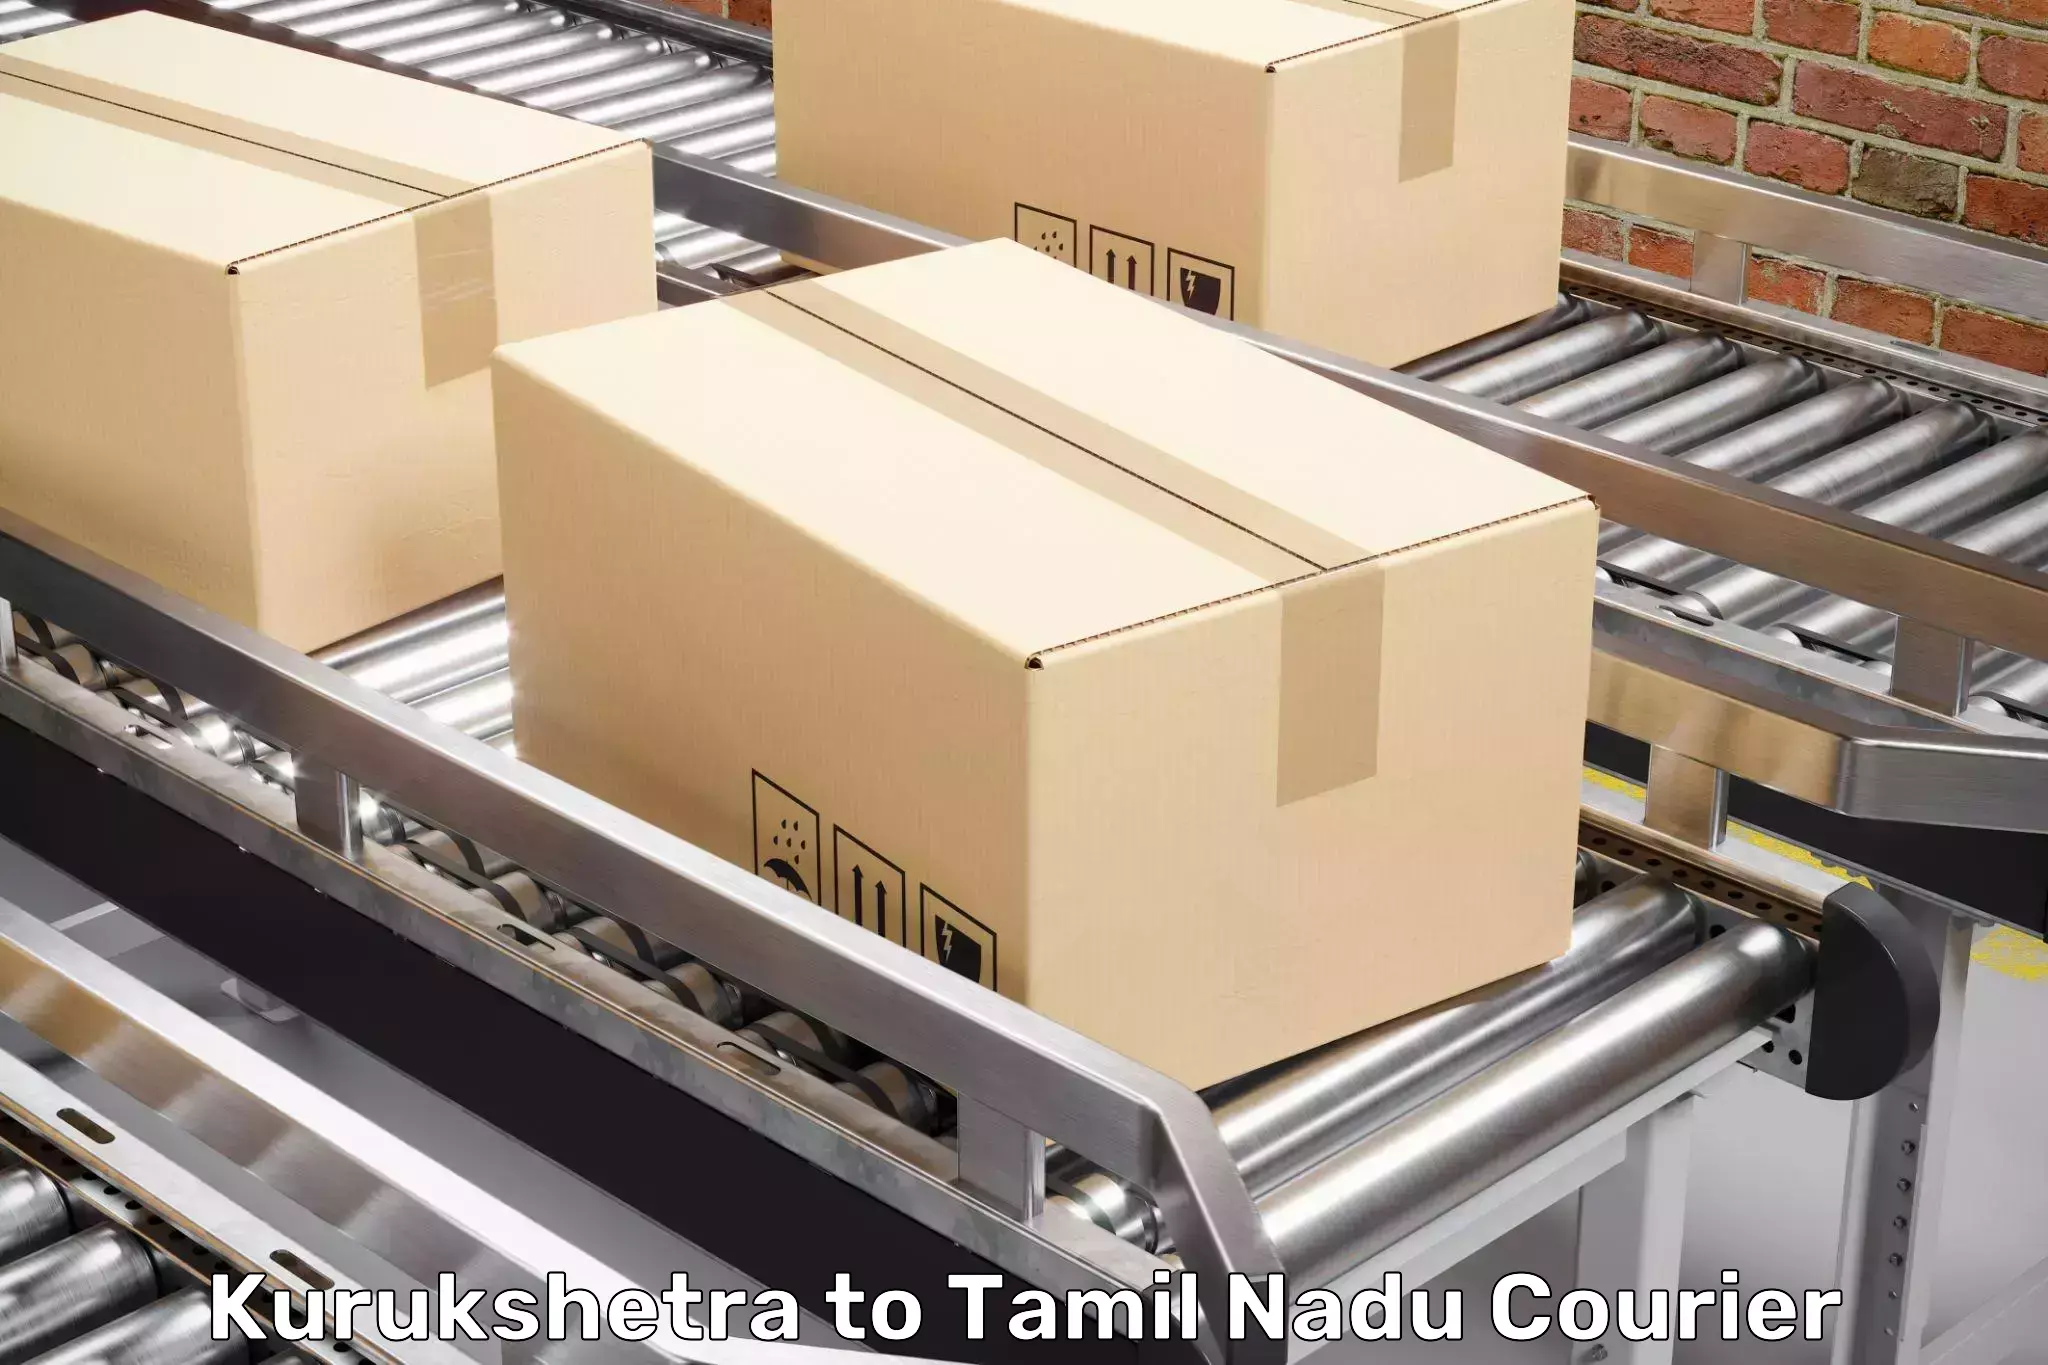 Professional packing services Kurukshetra to Tiruturaipundi